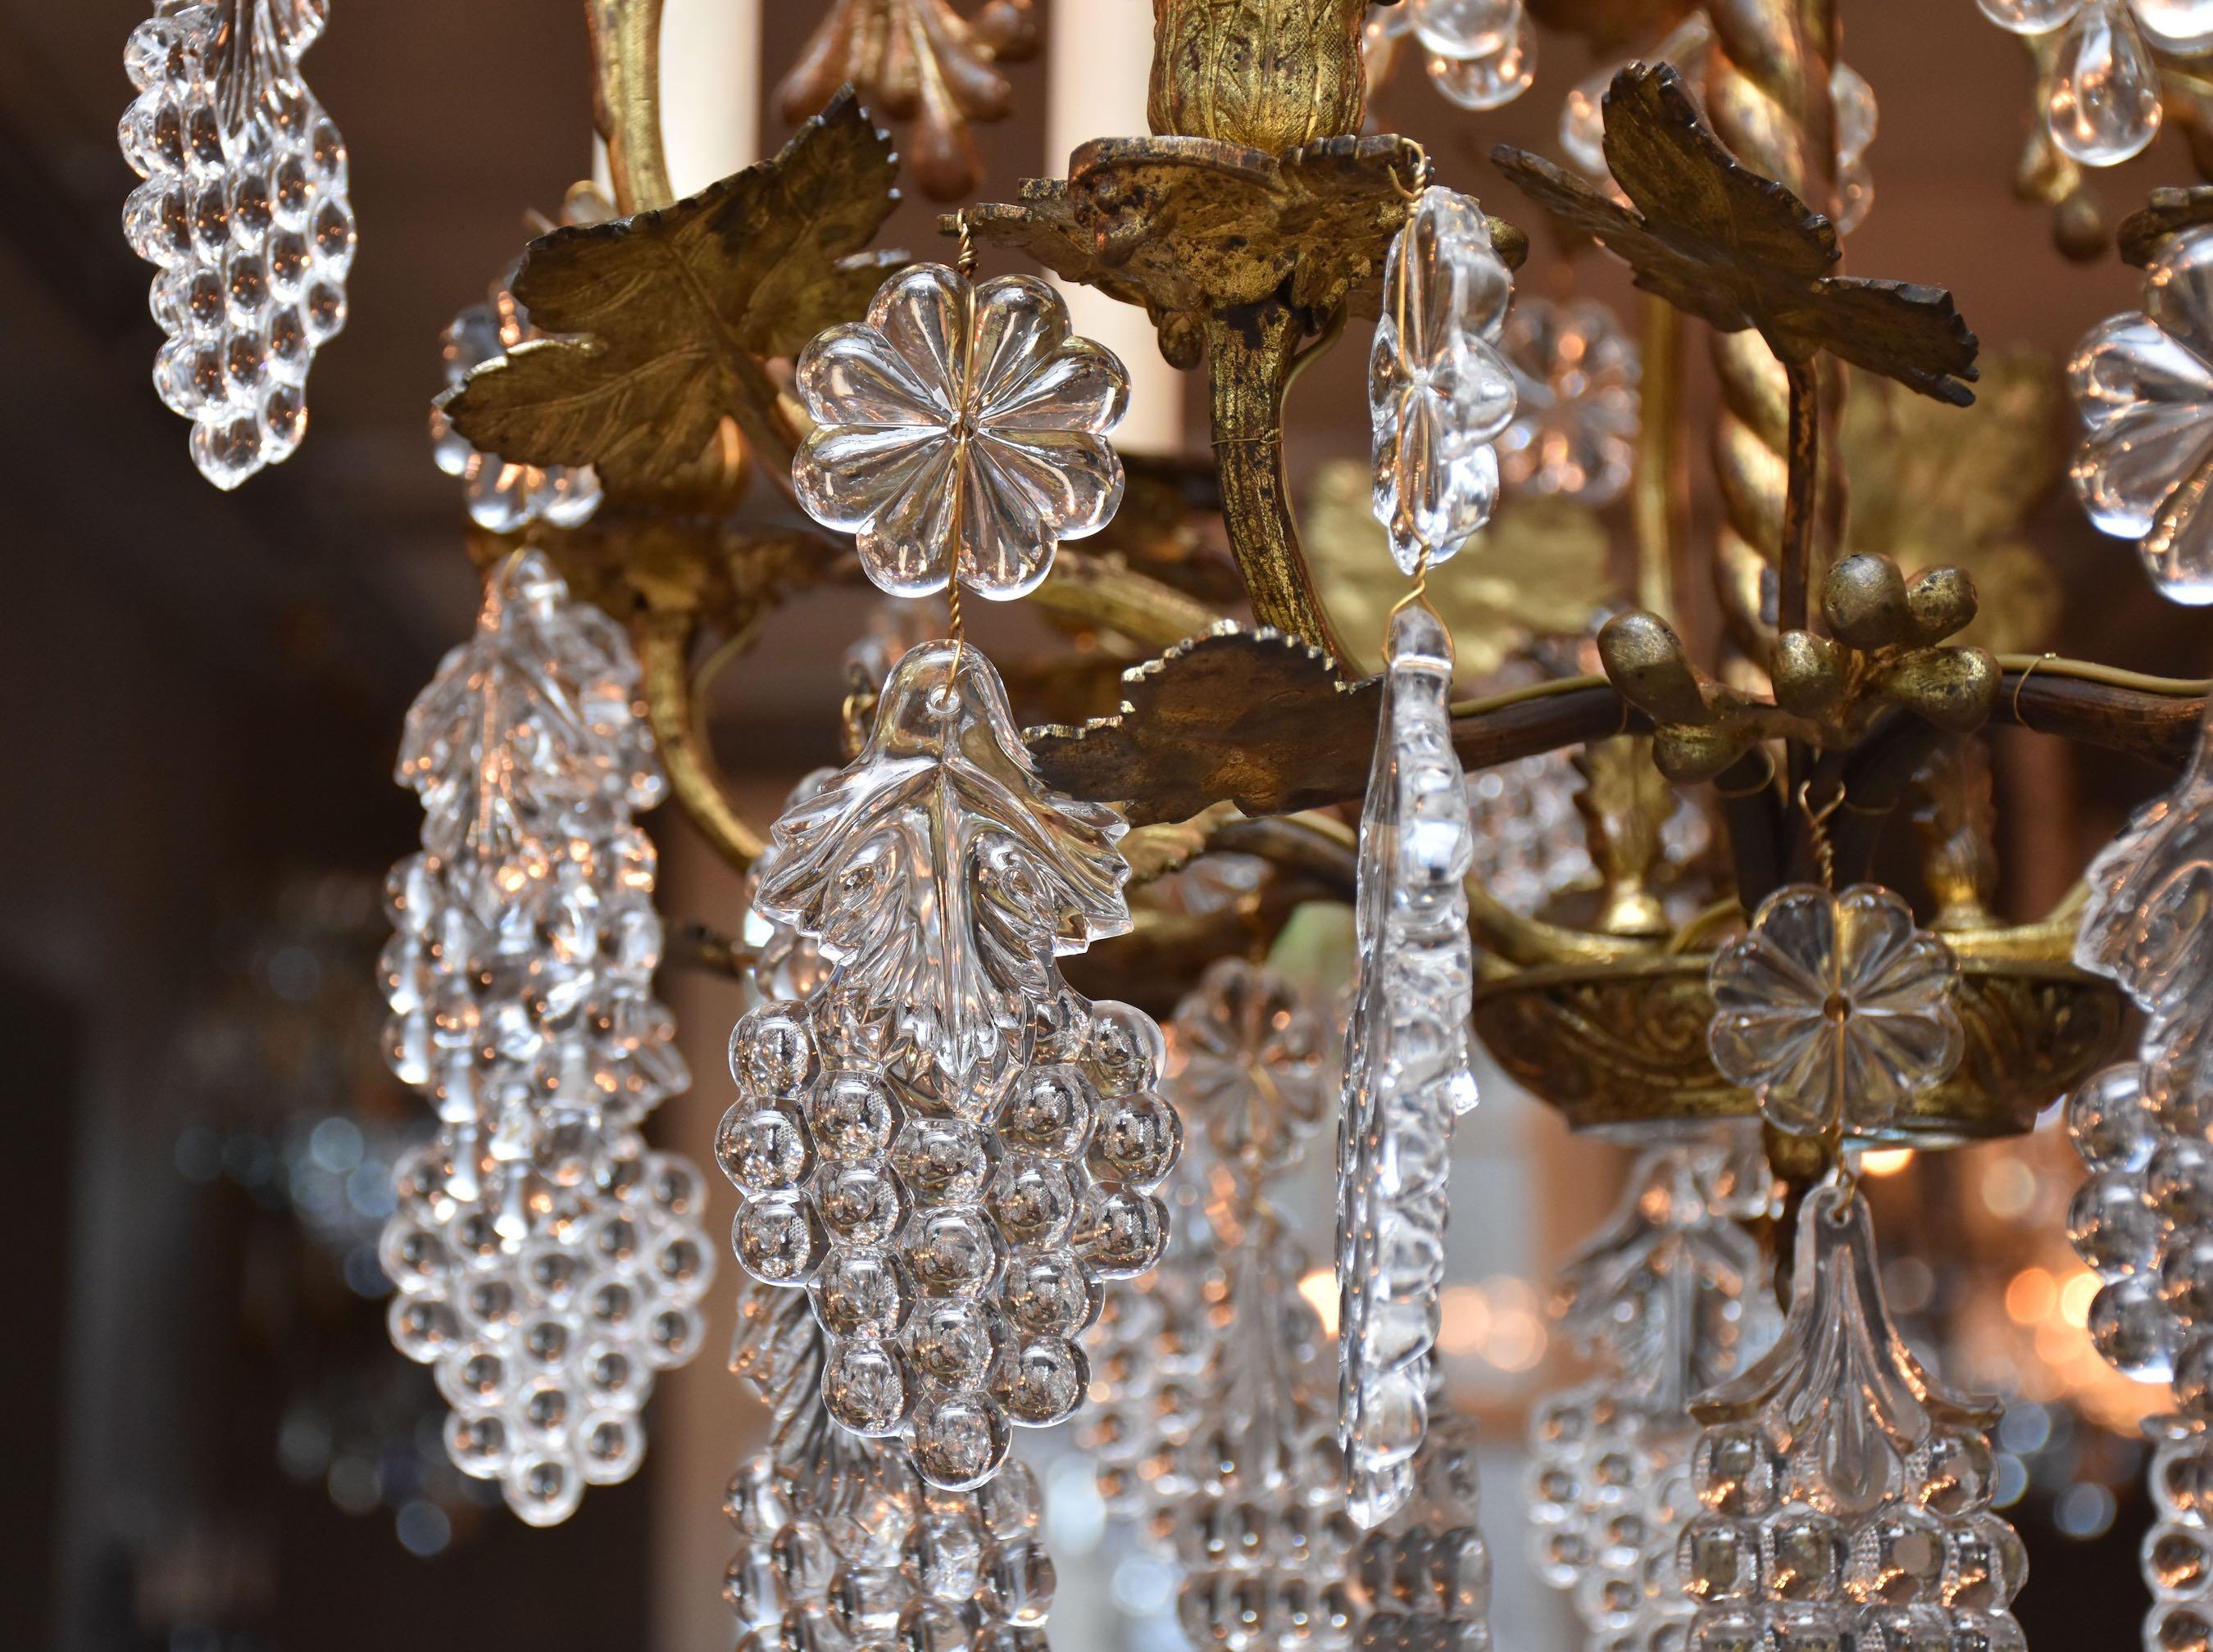 Ein wunderschöner 6-flammiger französischer Kronleuchter aus vergoldeter Bronze.
Verziert mit Weinblättern, Ranken, Kristalltrauben und großen Blumenrosetten.
Unter dem Kronleuchter befindet sich eine geschliffene Kristallbirne.
Herkunftsort -